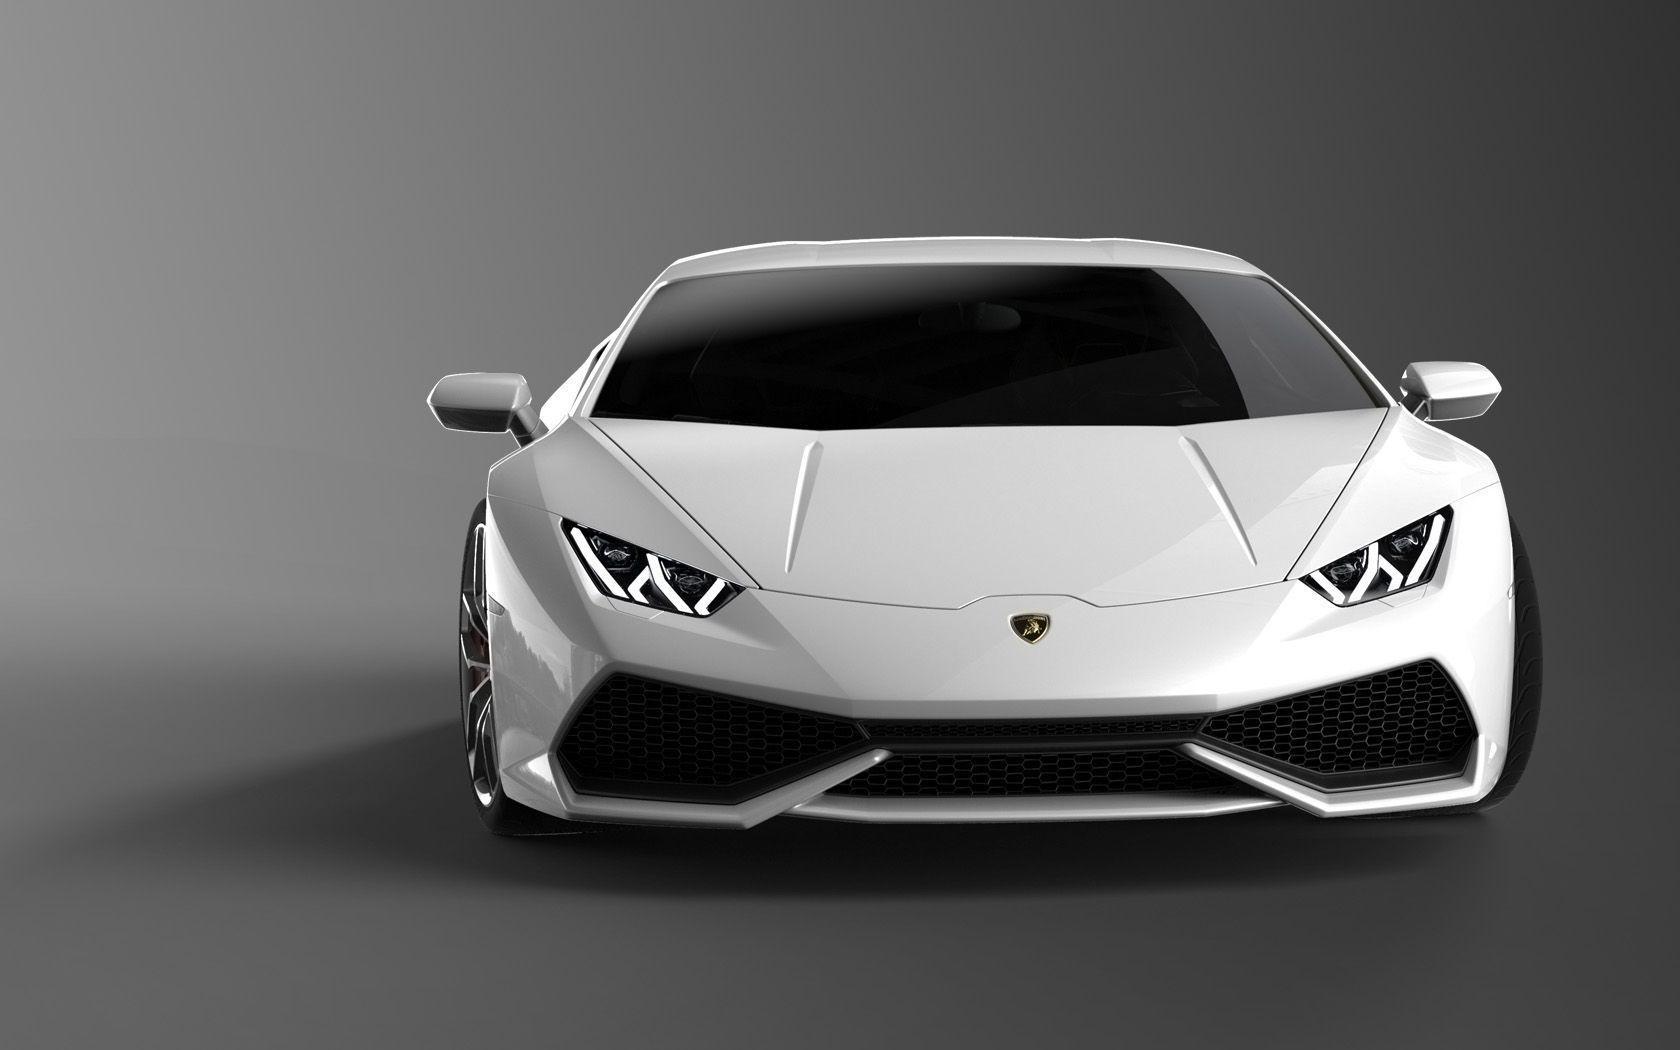 Black Lamborghini HD Wallpapers  Top Free Black Lamborghini HD Backgrounds   WallpaperAccess